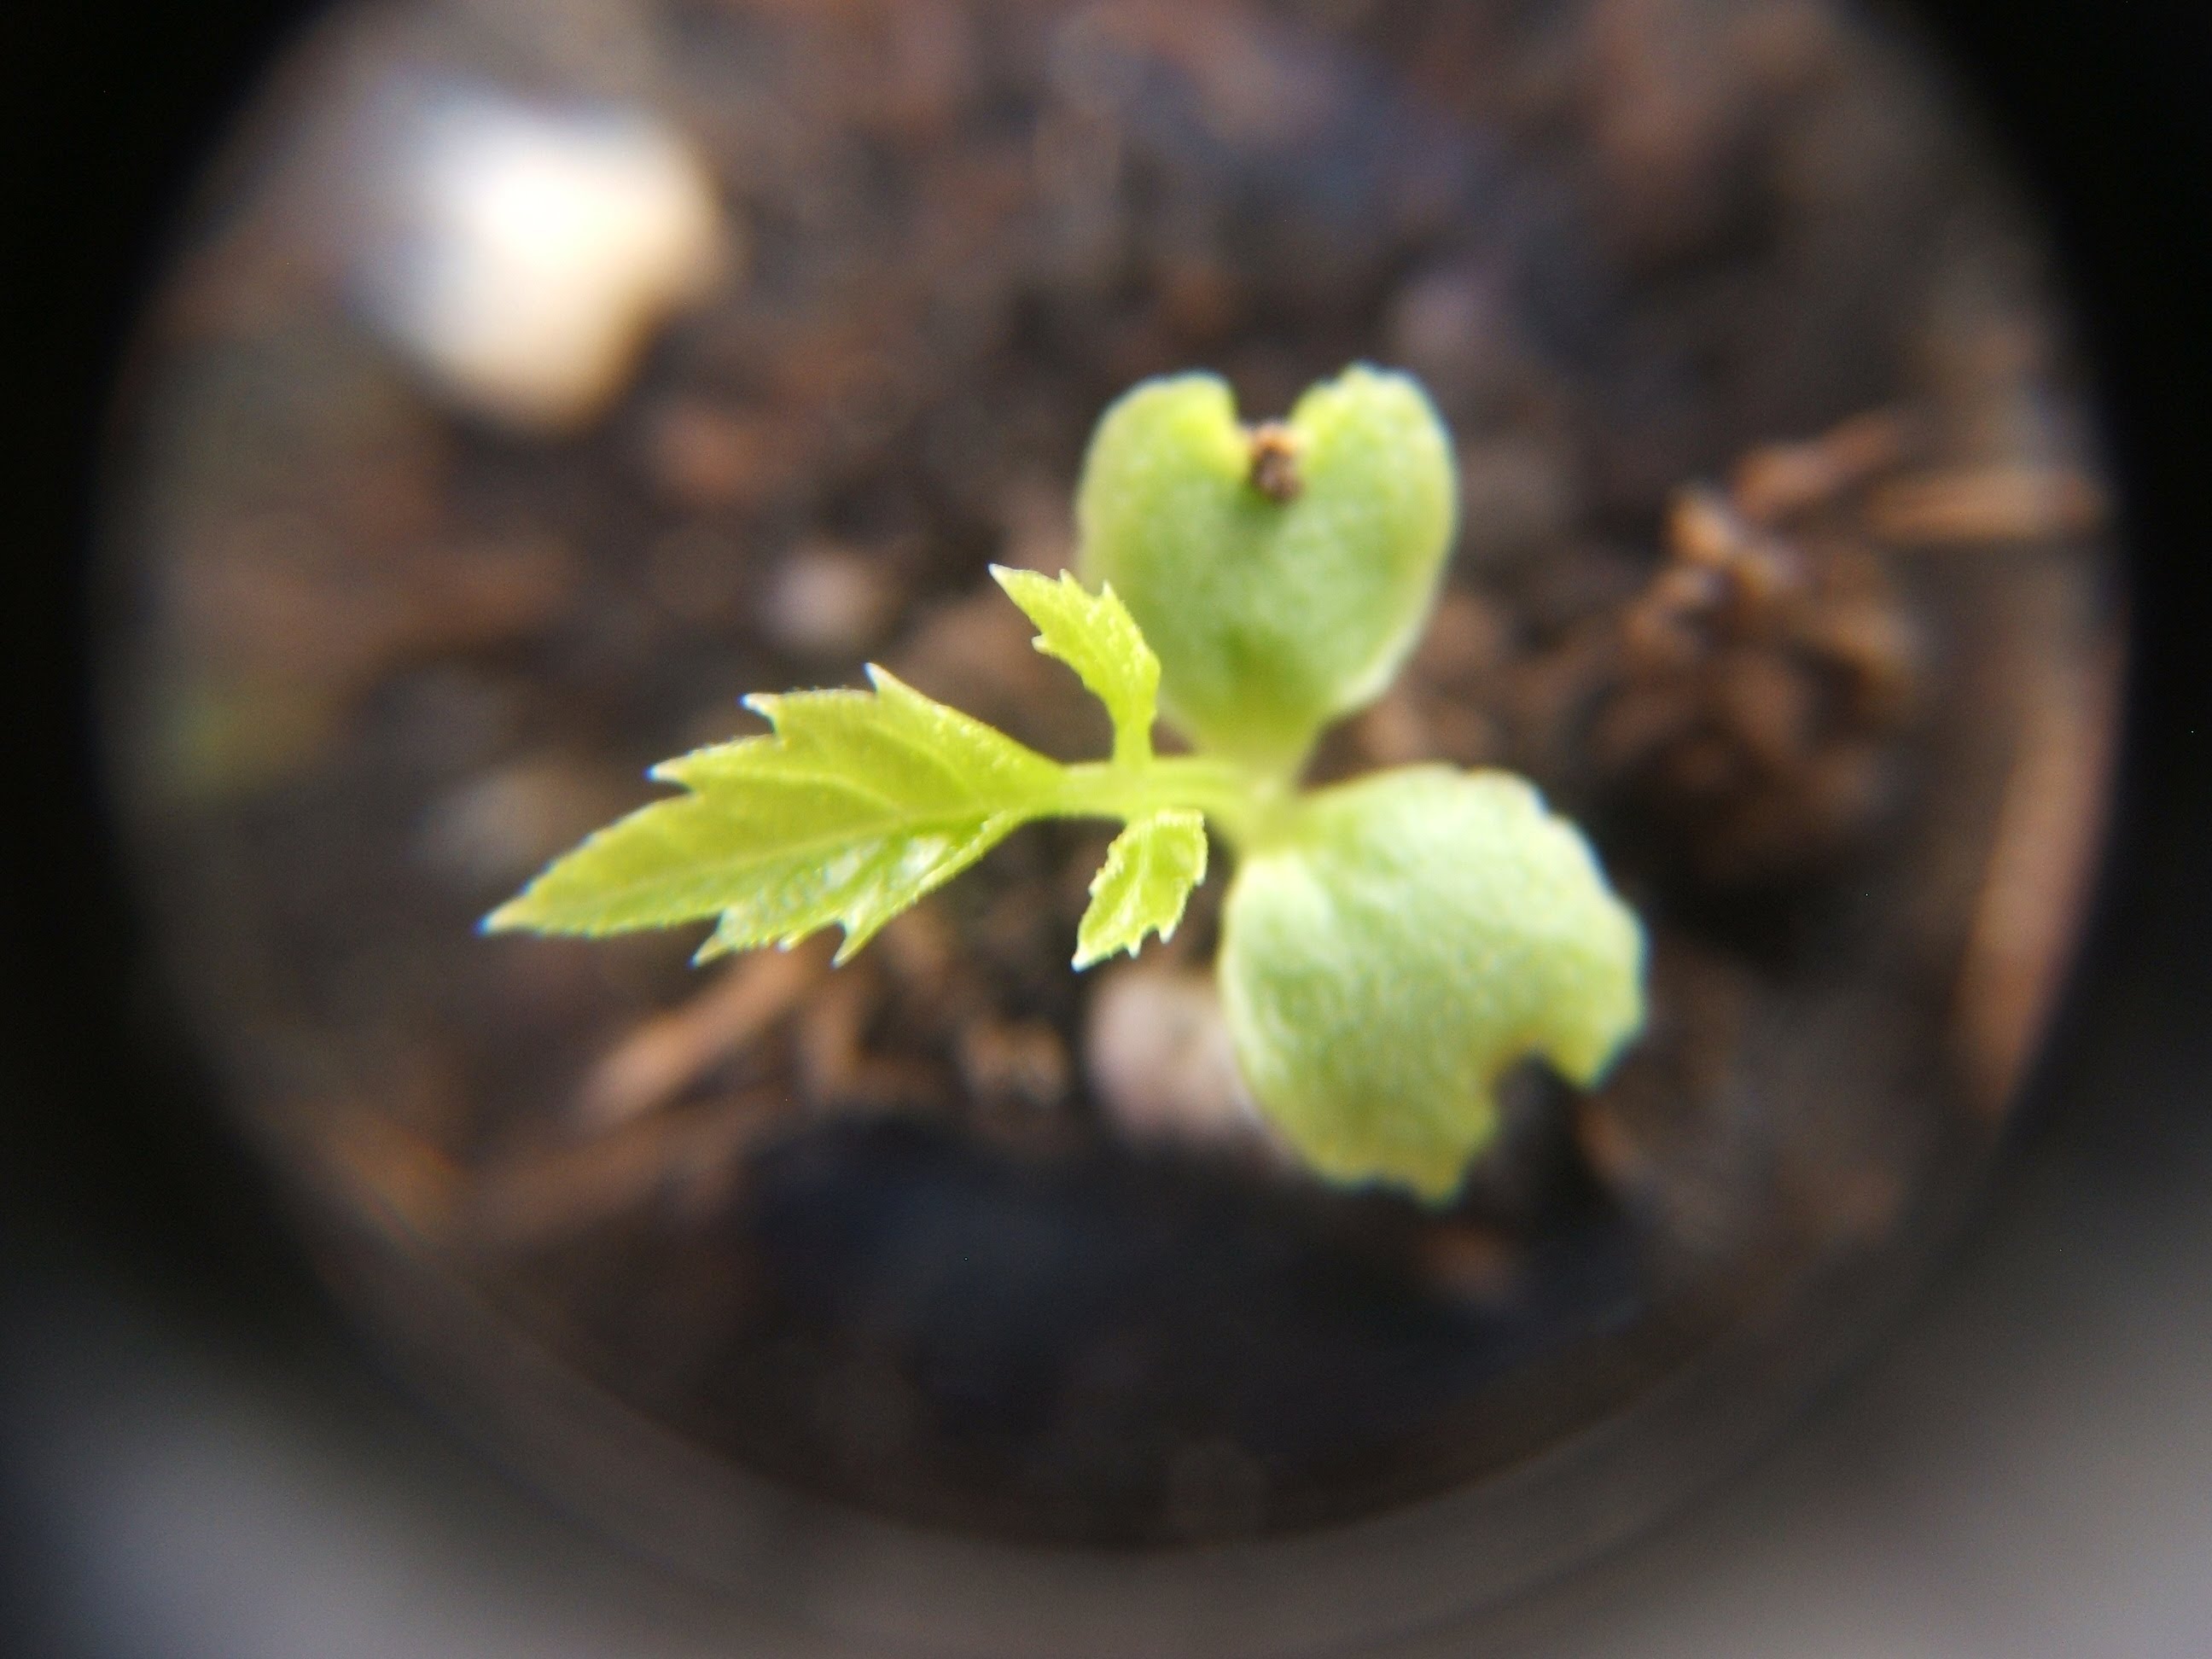 Seedlings of Pepino Melon, Tree Kale, and Jiaogulan - YouTube